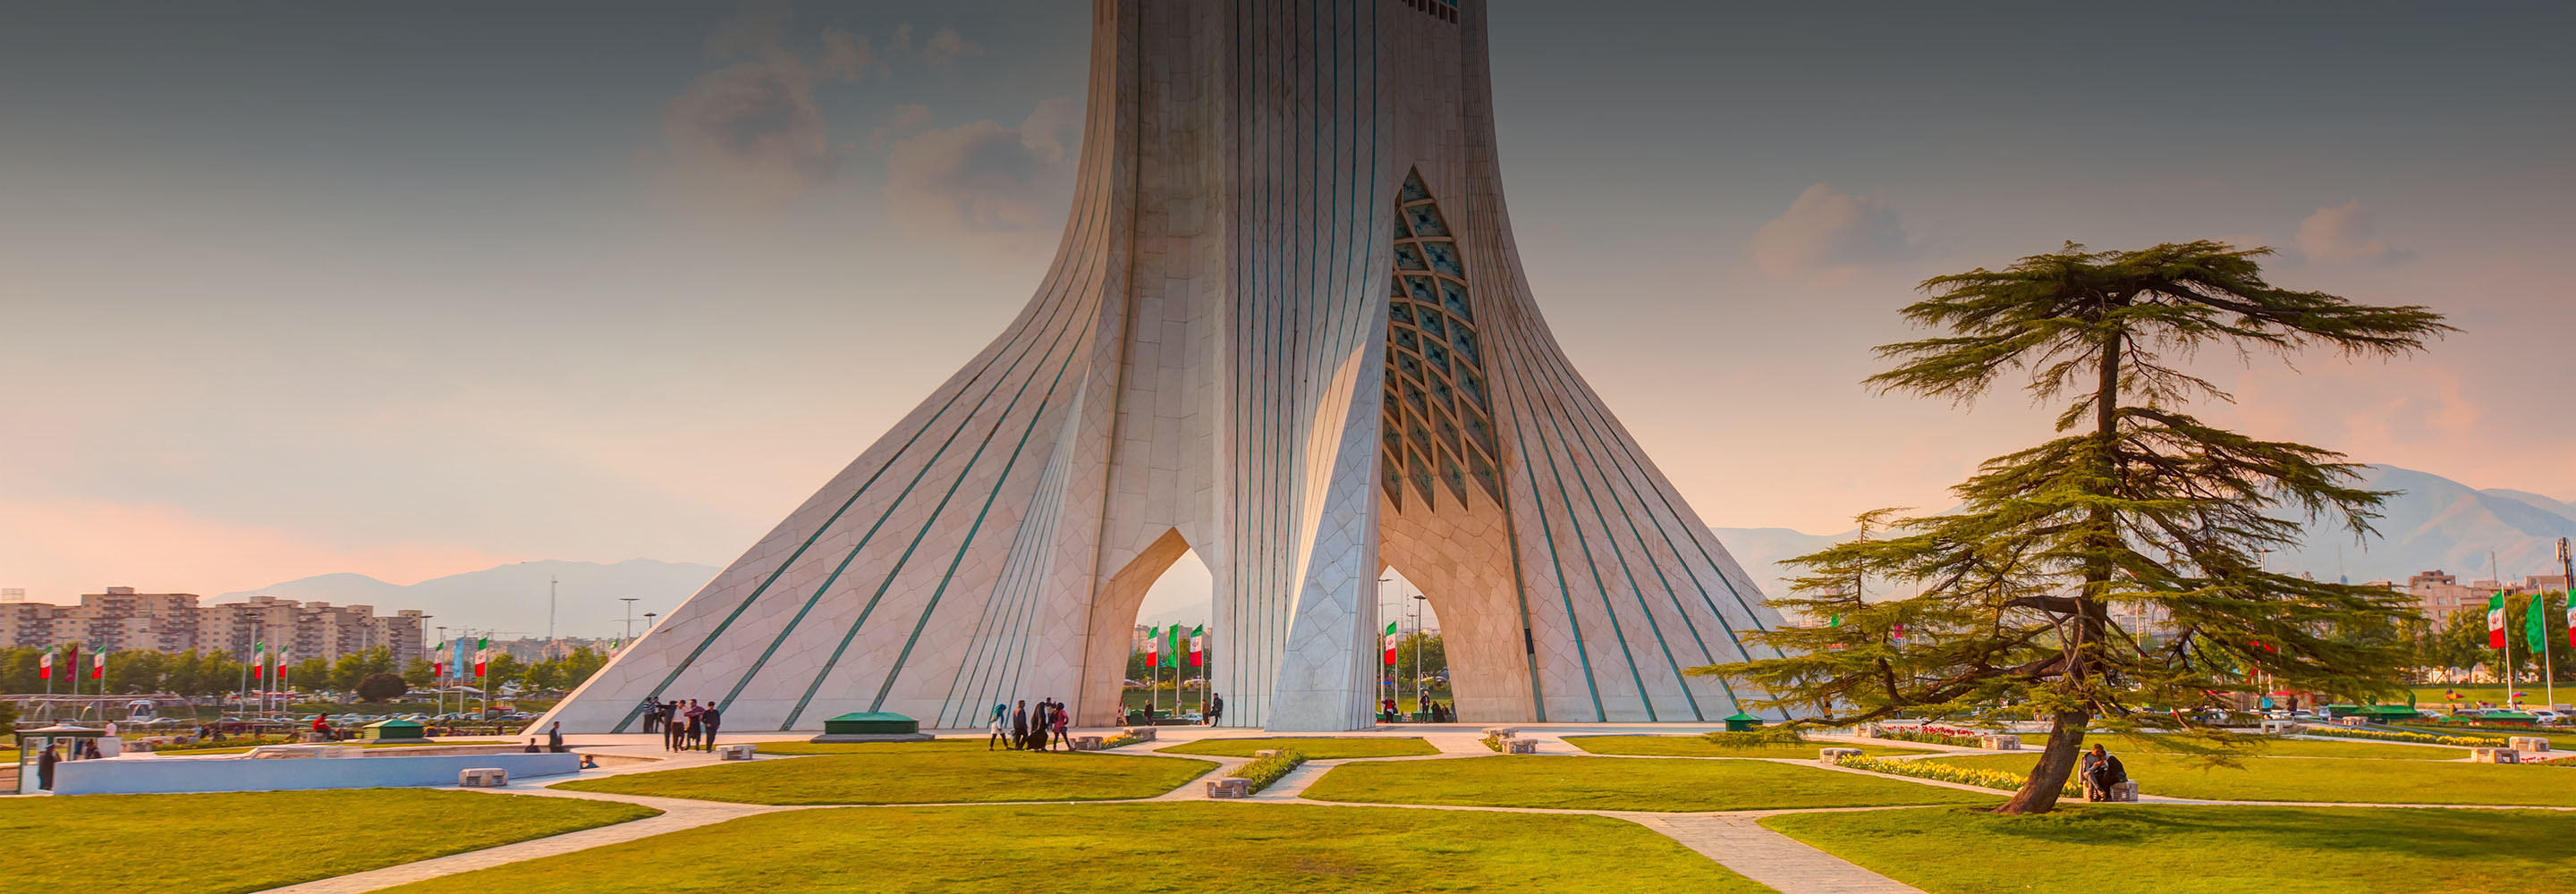 11 главных достопримечательностей Тегерана